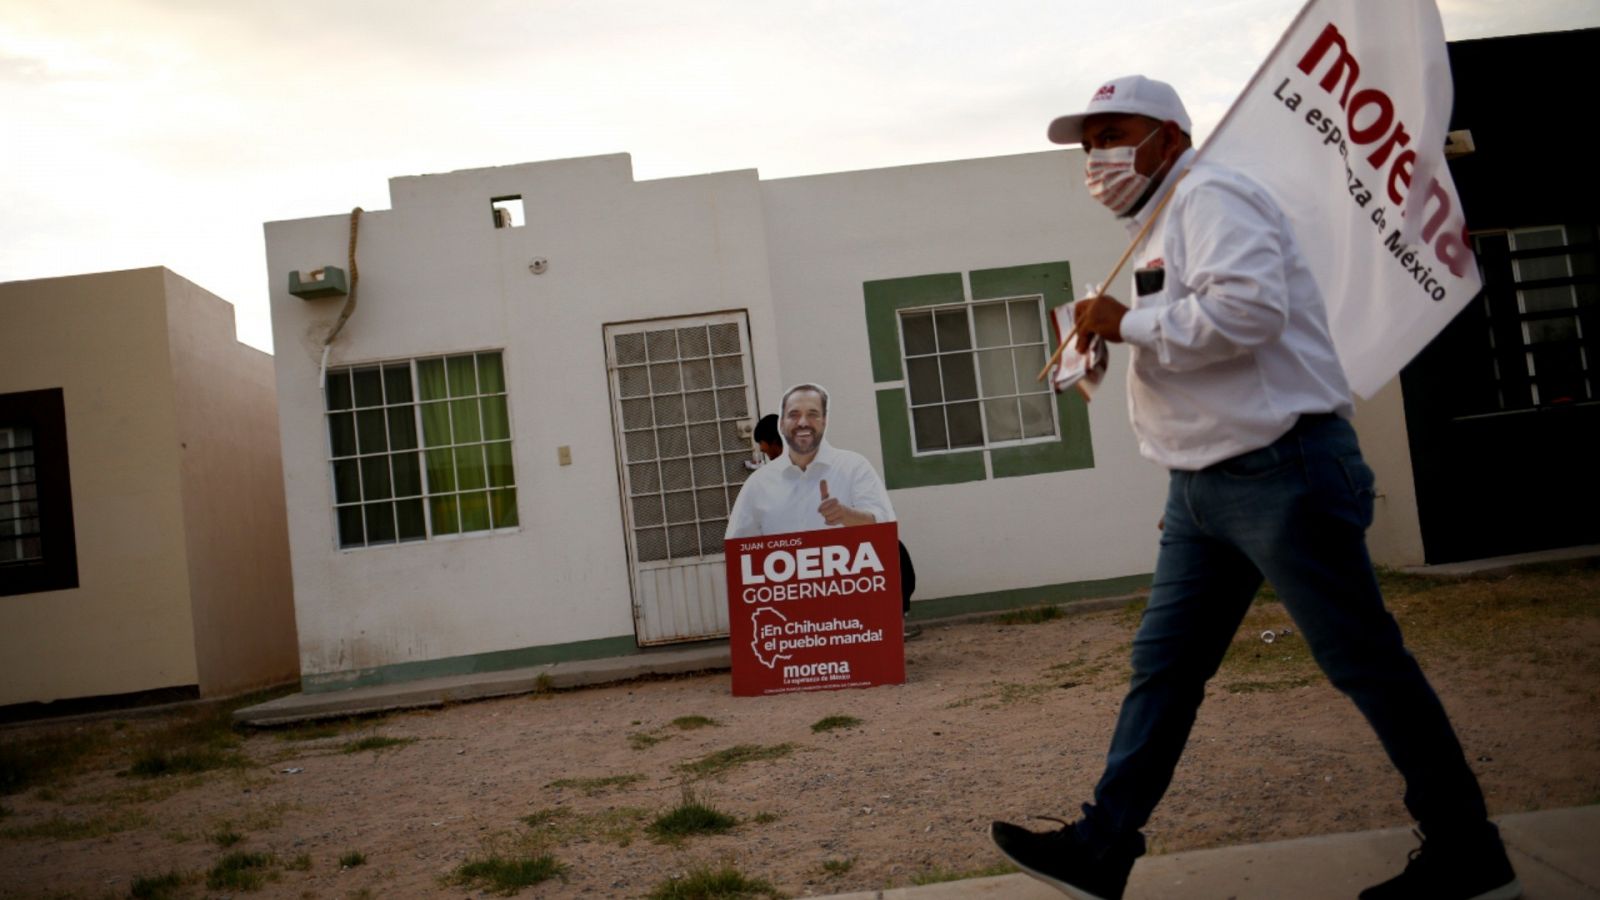 Un hombre sosteniendo una bandera electoral frente a un cartel de Juan Carlos Loera, candidato del partido Movimiento de Regeneración Nacional (MORENA) a gobernador en el estado de Chihuahua, México.